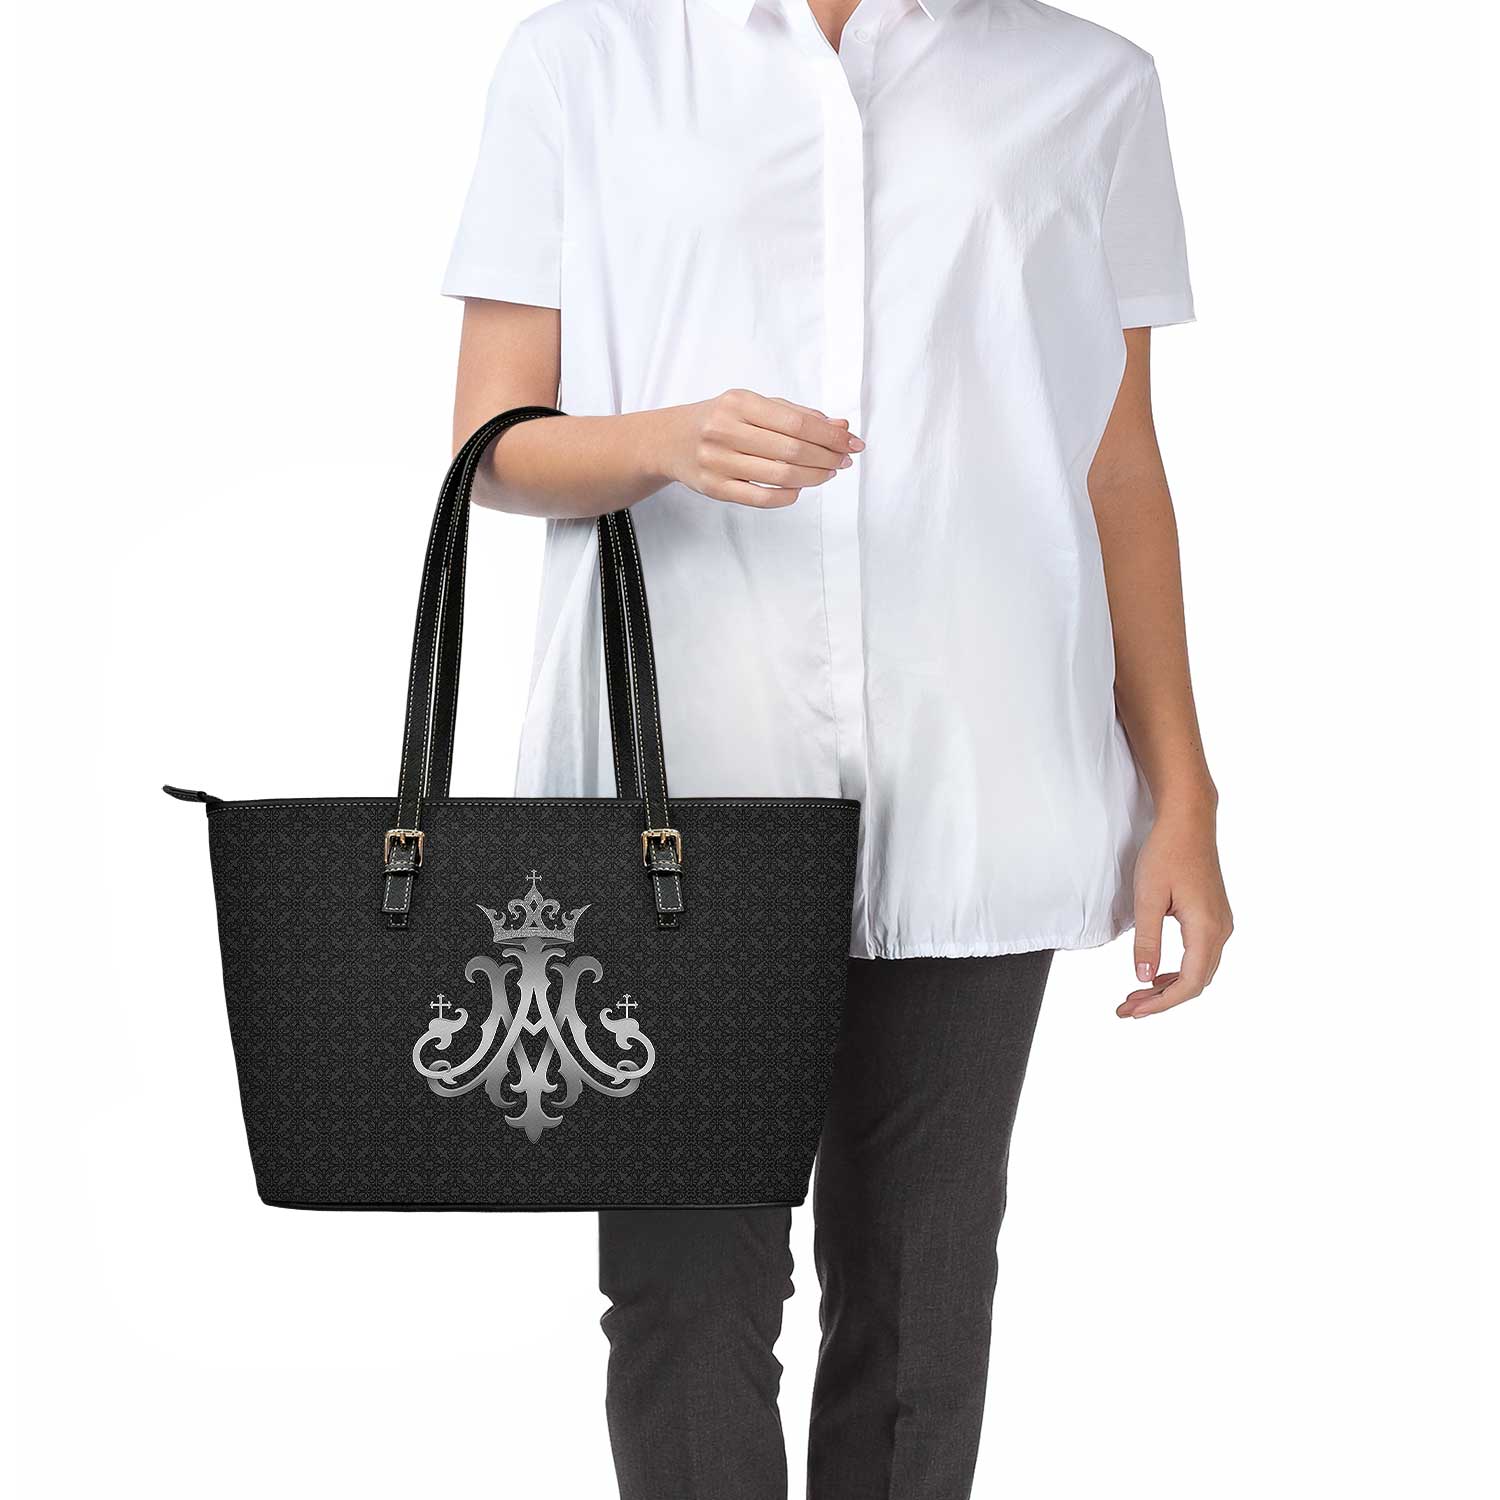 Ave Maria Tote Bag (Black)